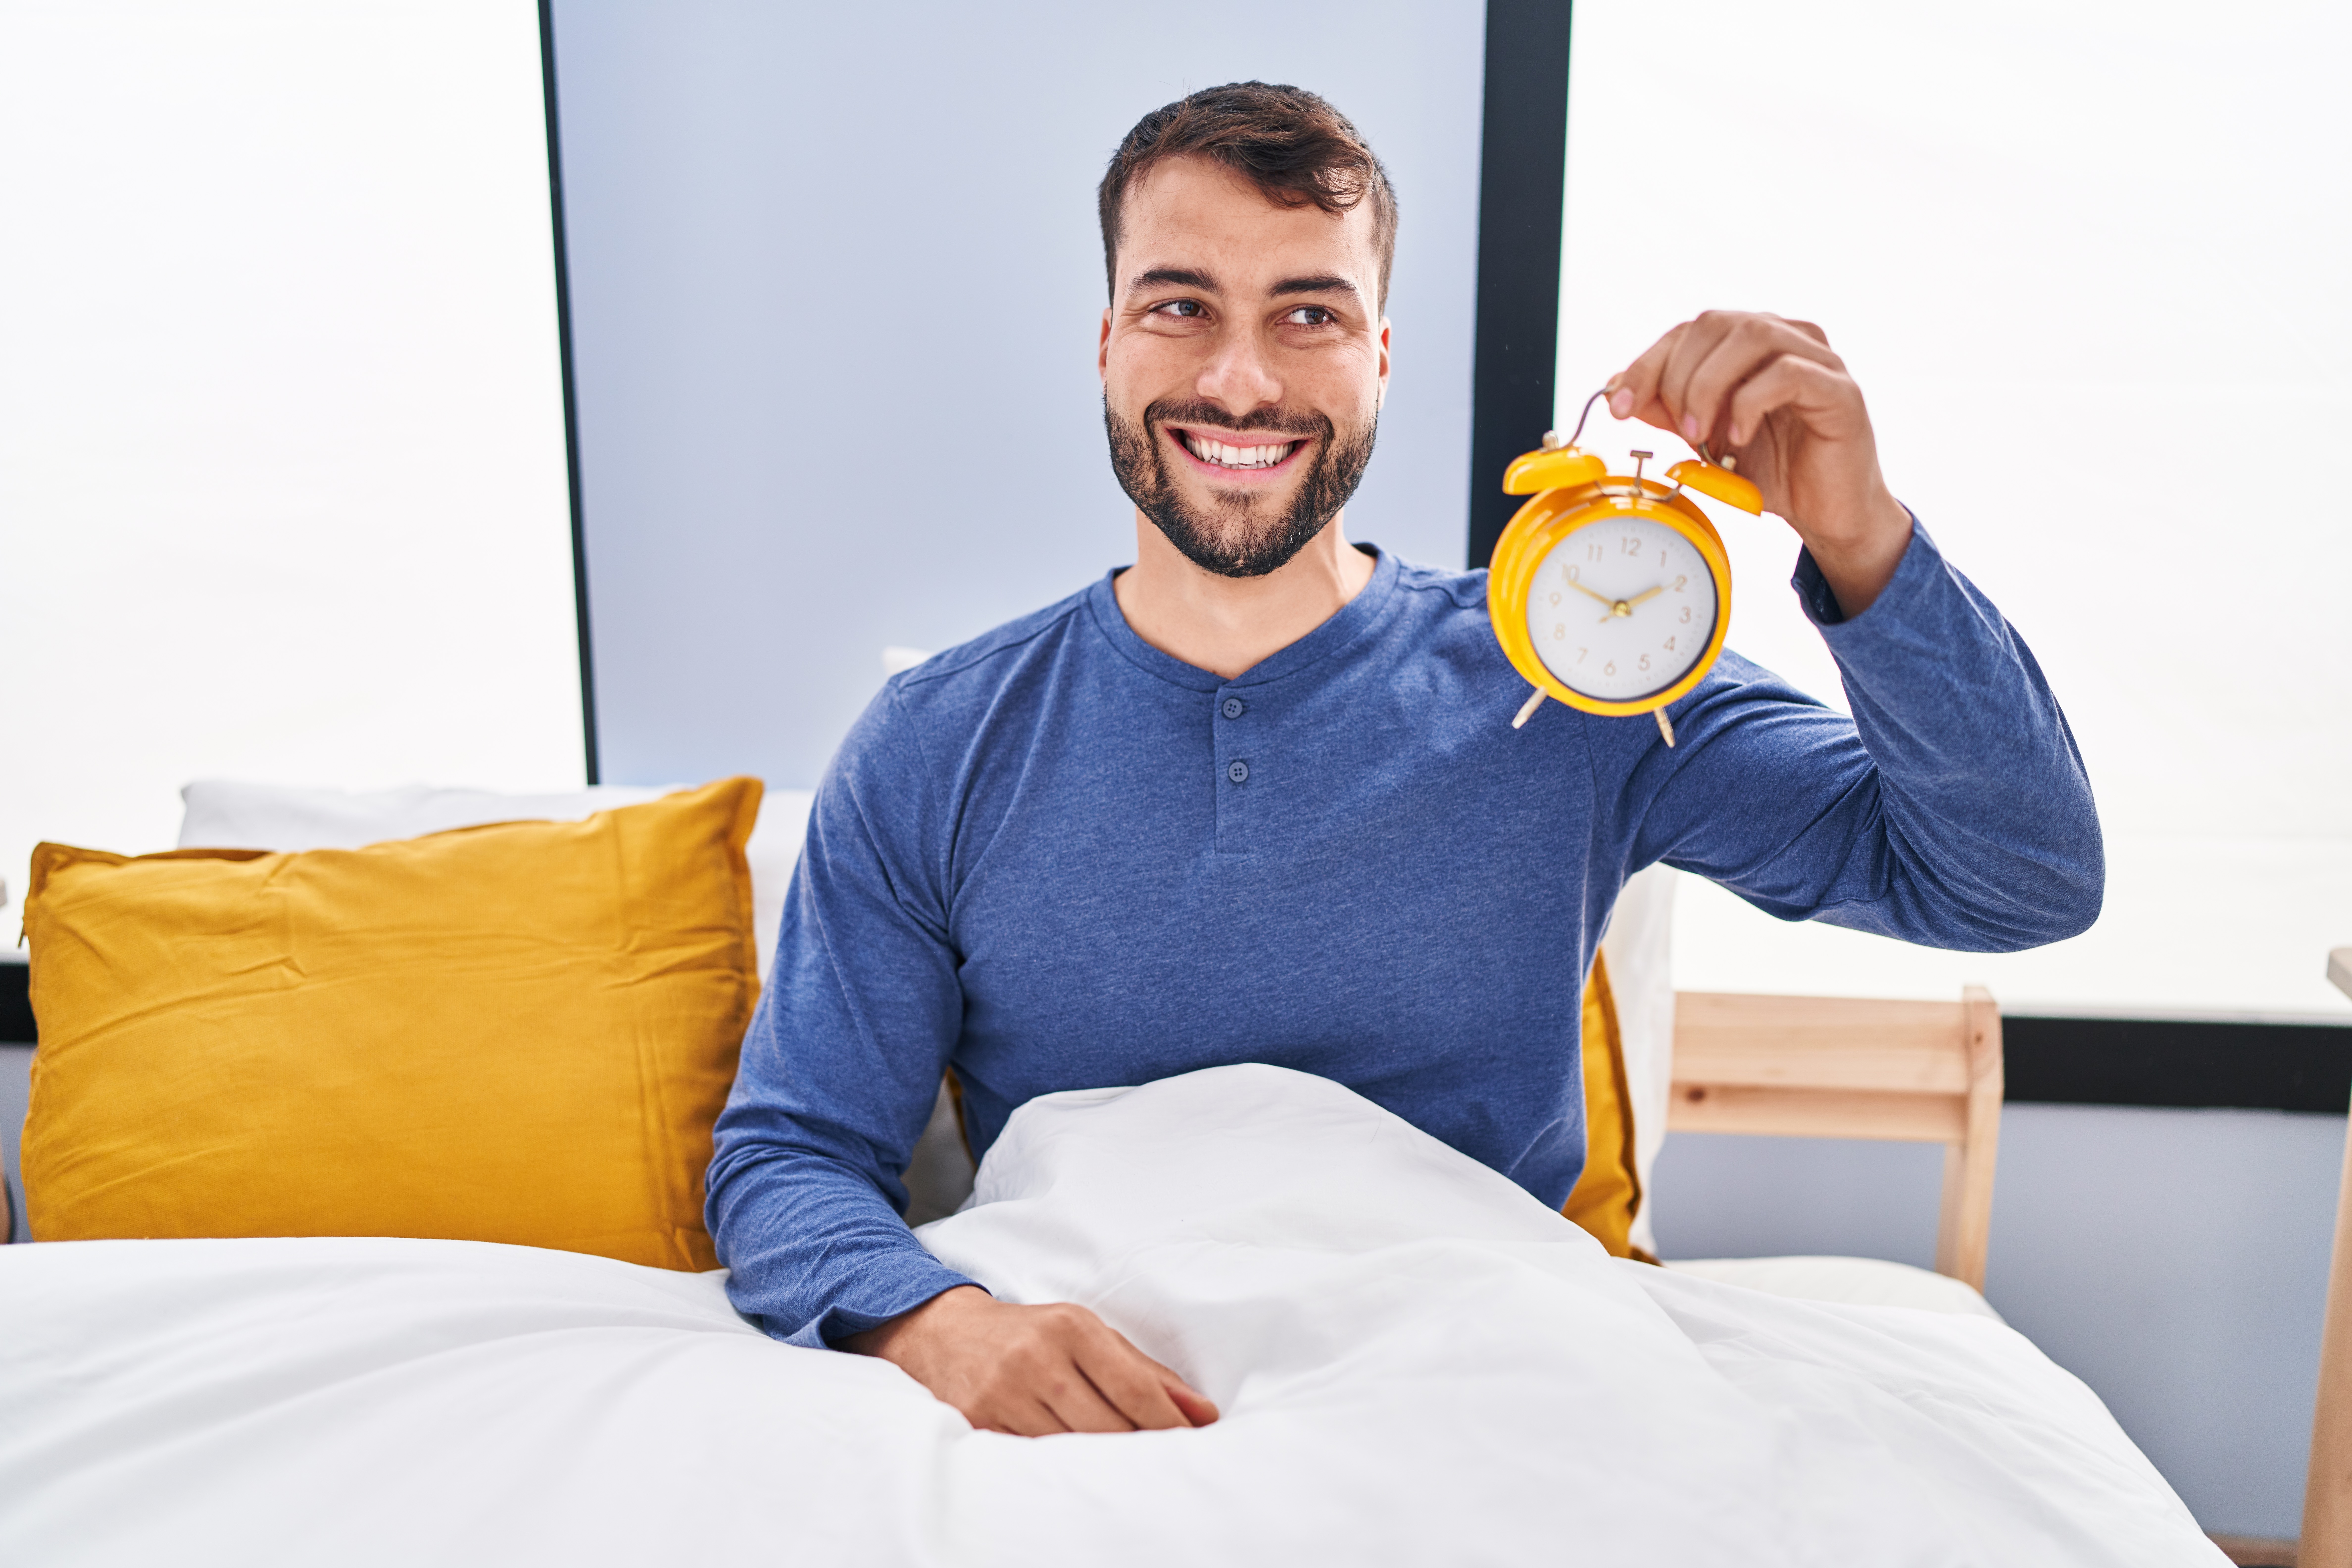 La sensibilisation à la nécessité d’une bonne qualité et d’une durée suffisante de sommeil pour la santé à des implications inattendues  (Visuel Adobe stock 619764281)